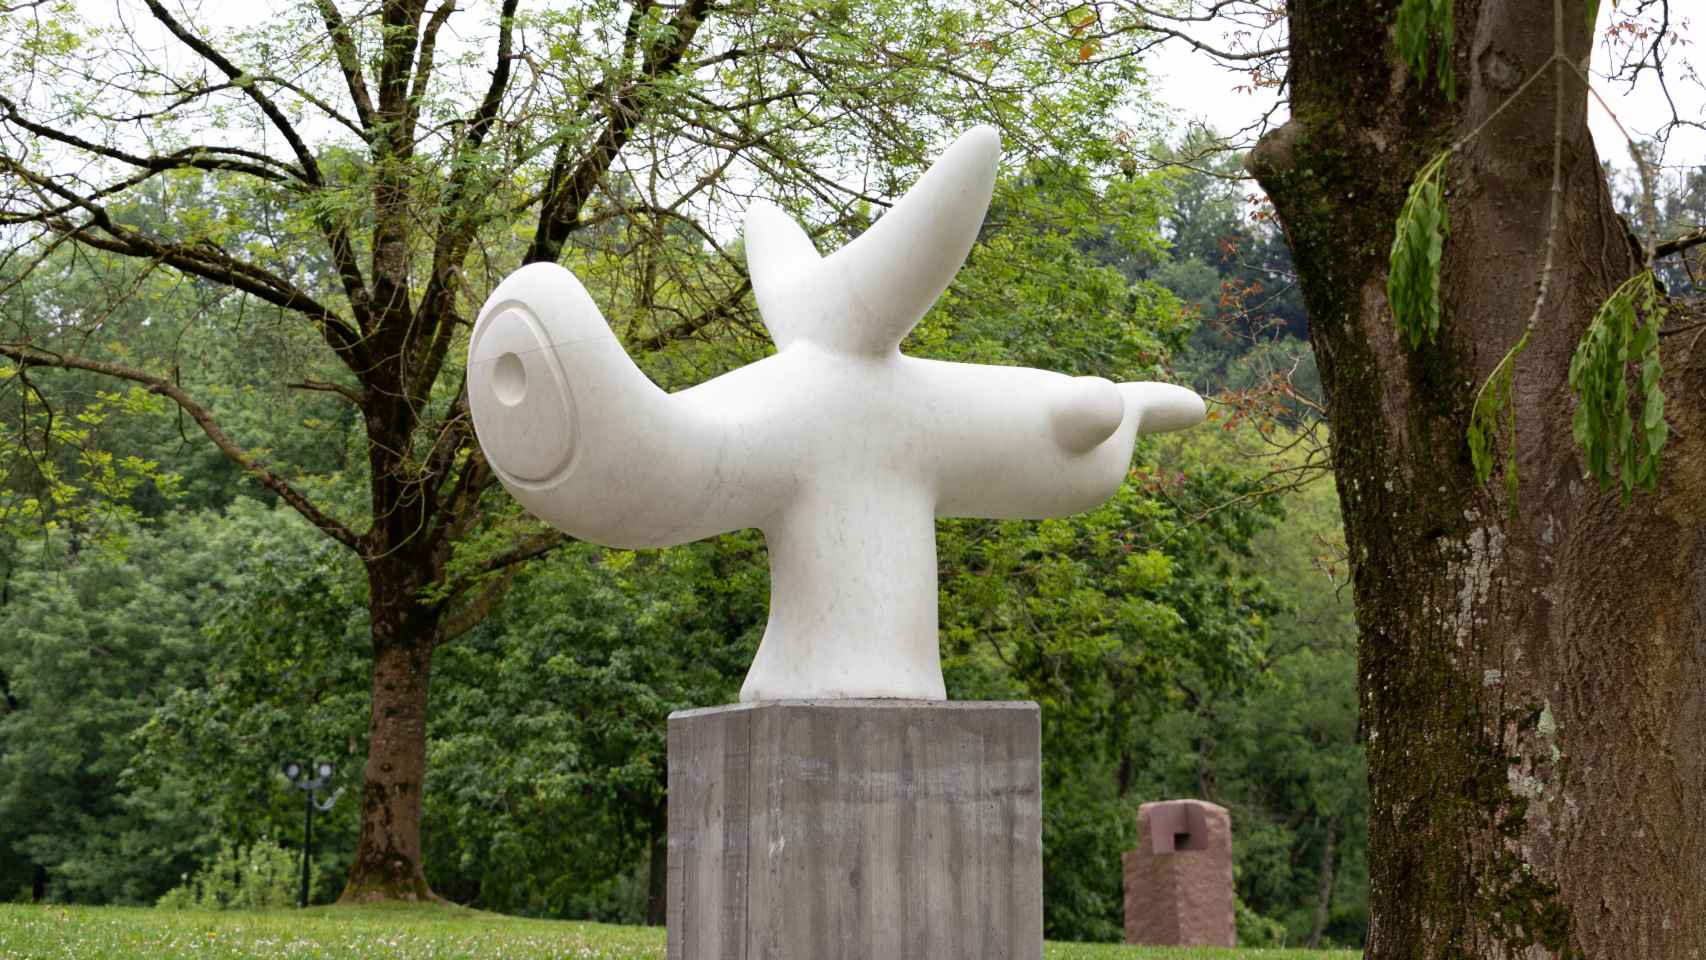 Escultura de Miró en el jardín de Chillida Leku: 'Pajaro Solar', 1968. Foto: Mikel Chillida